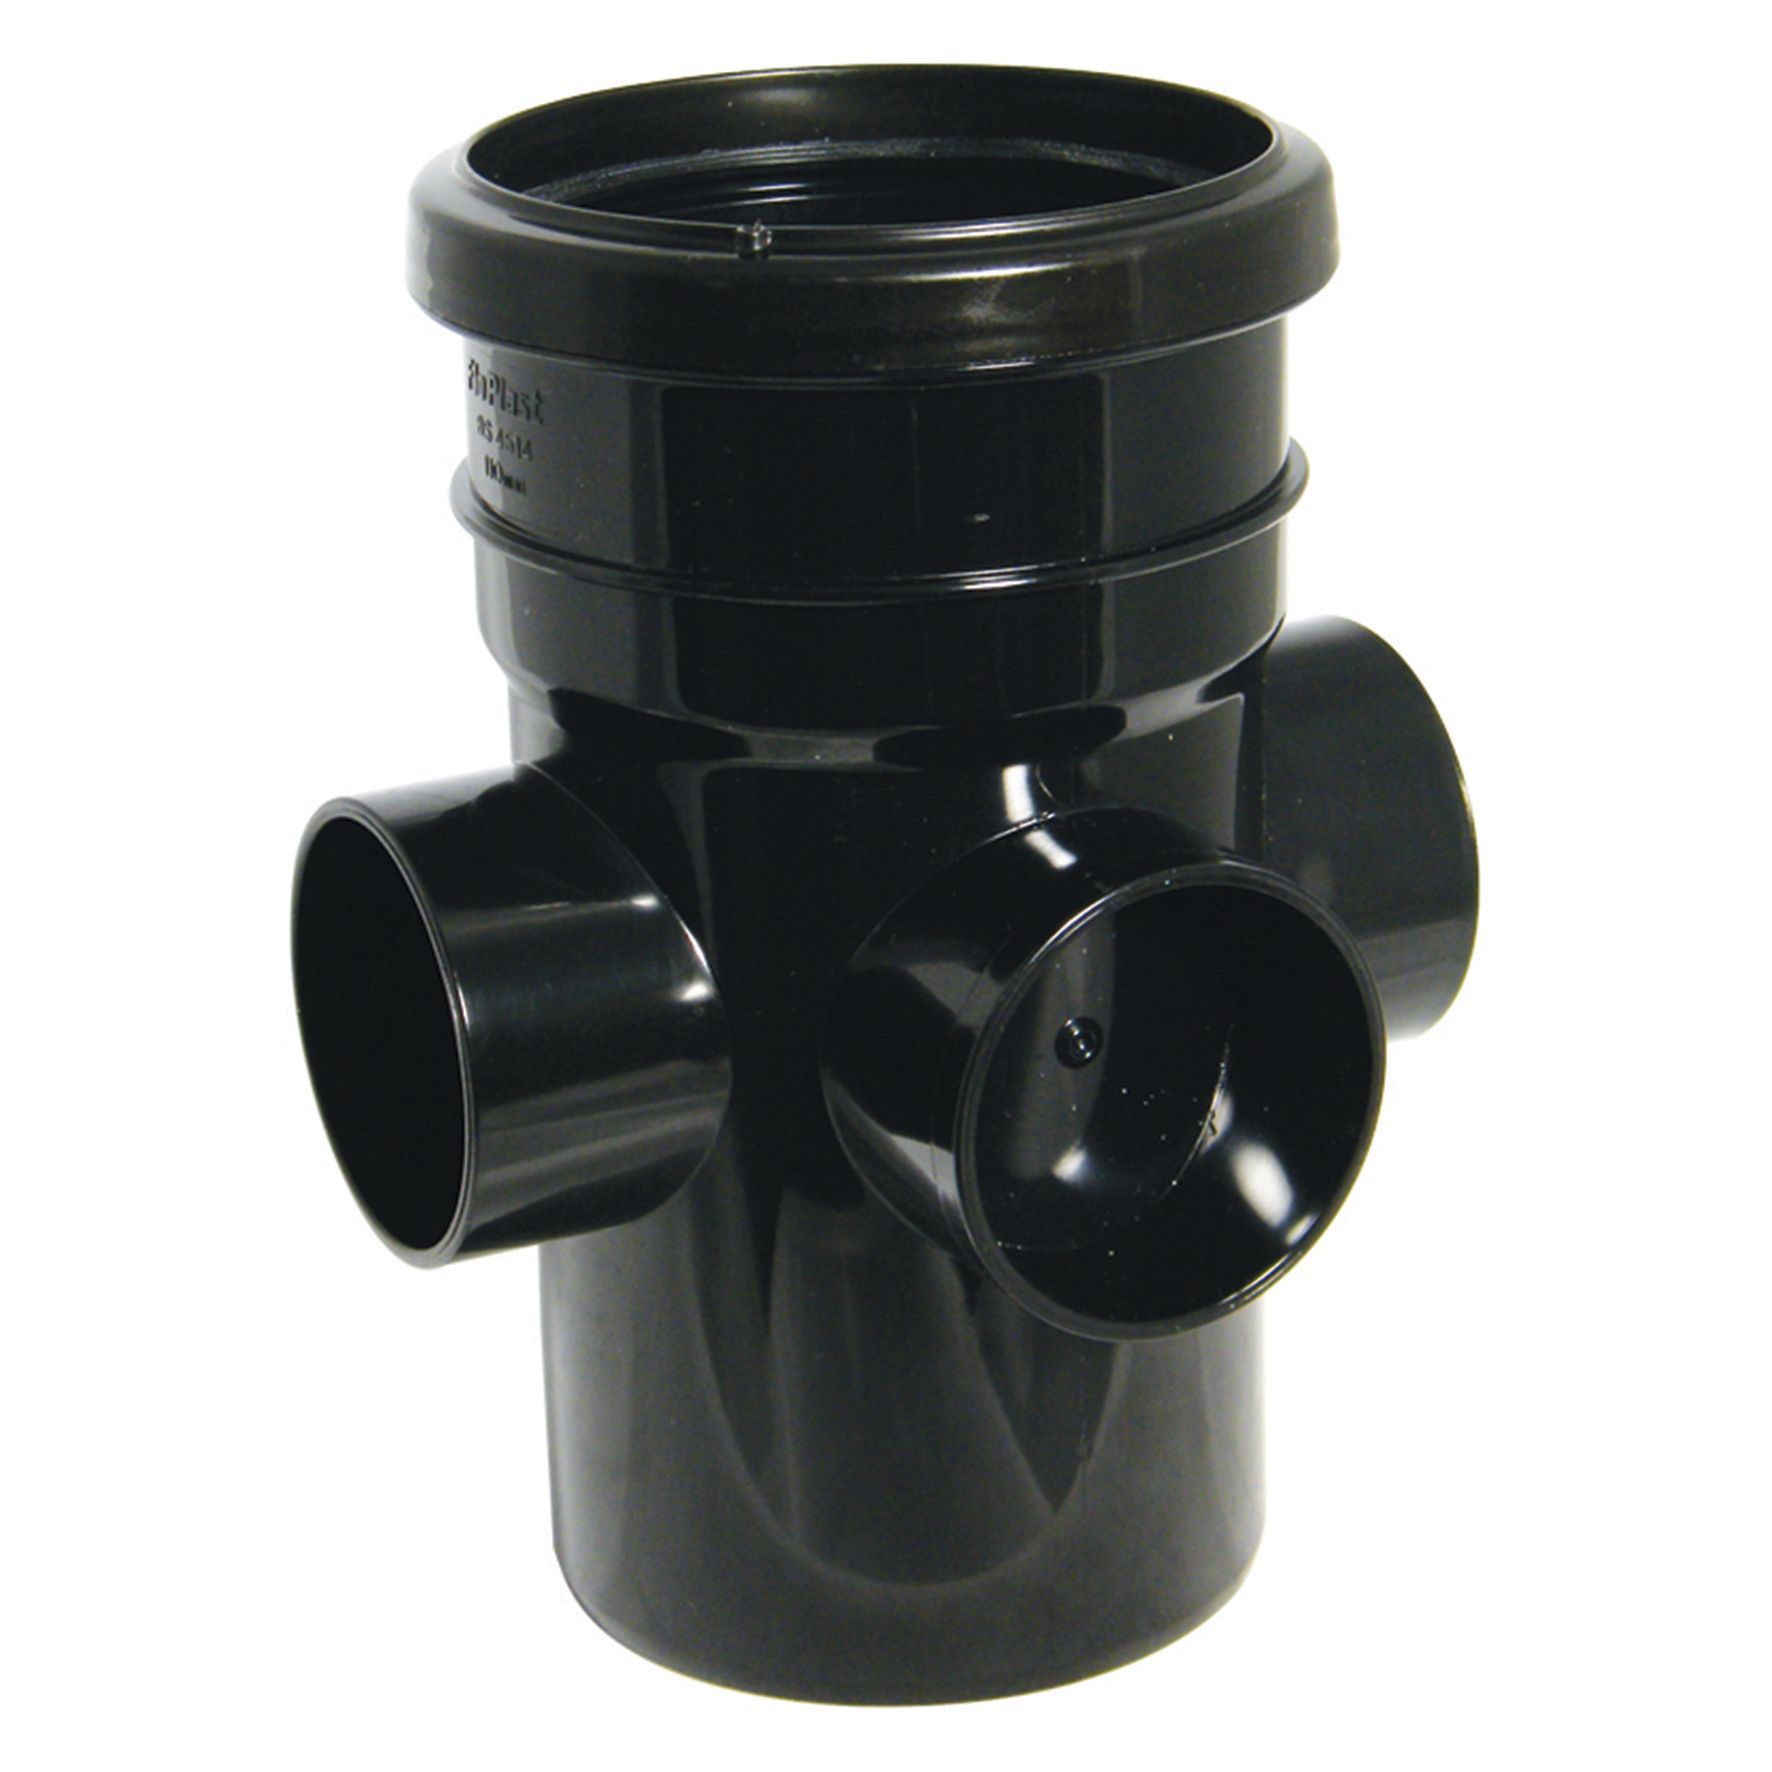 Image of FloPlast 110mm Soil Boss Pipe Socket/Spigot - Black